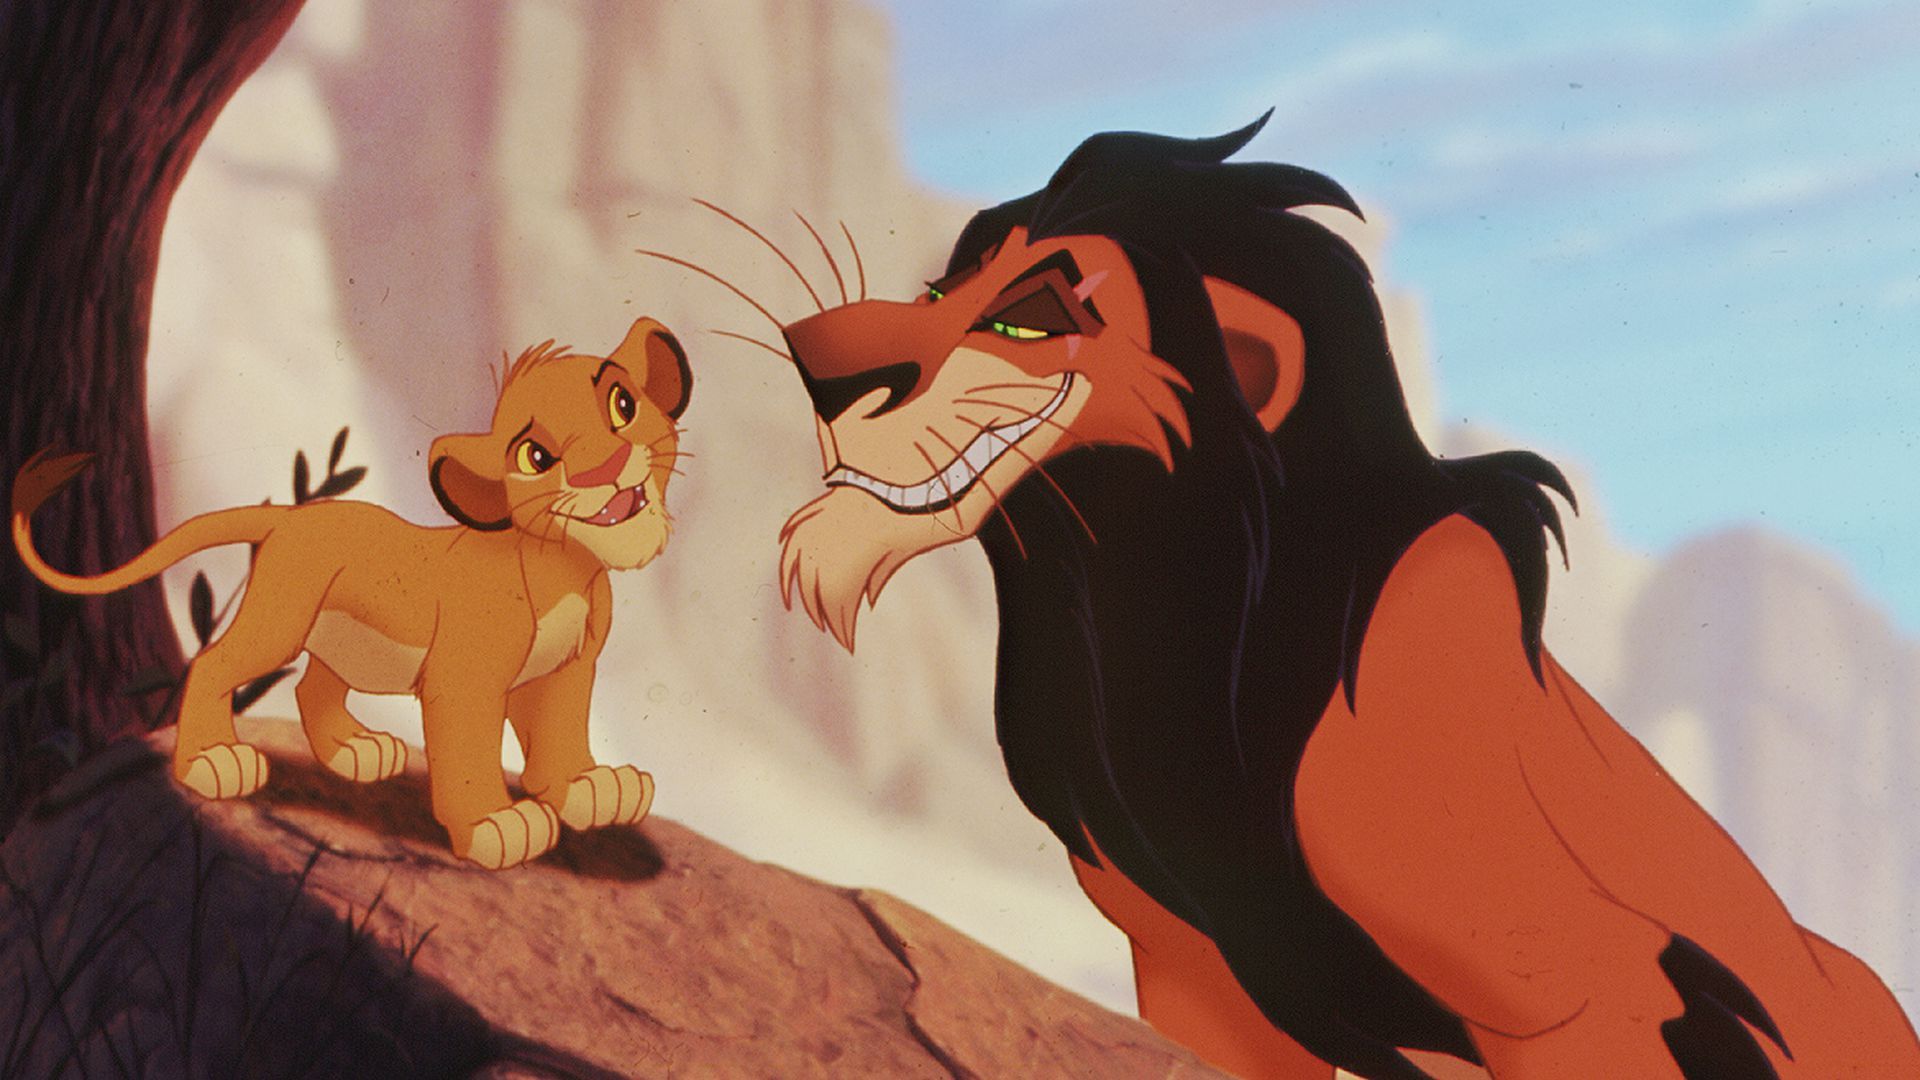  Löwen Hintergrundbild 1920x1080. Hättet ihr's gewusst? 10 Fakten zu Disneys König der Löwen